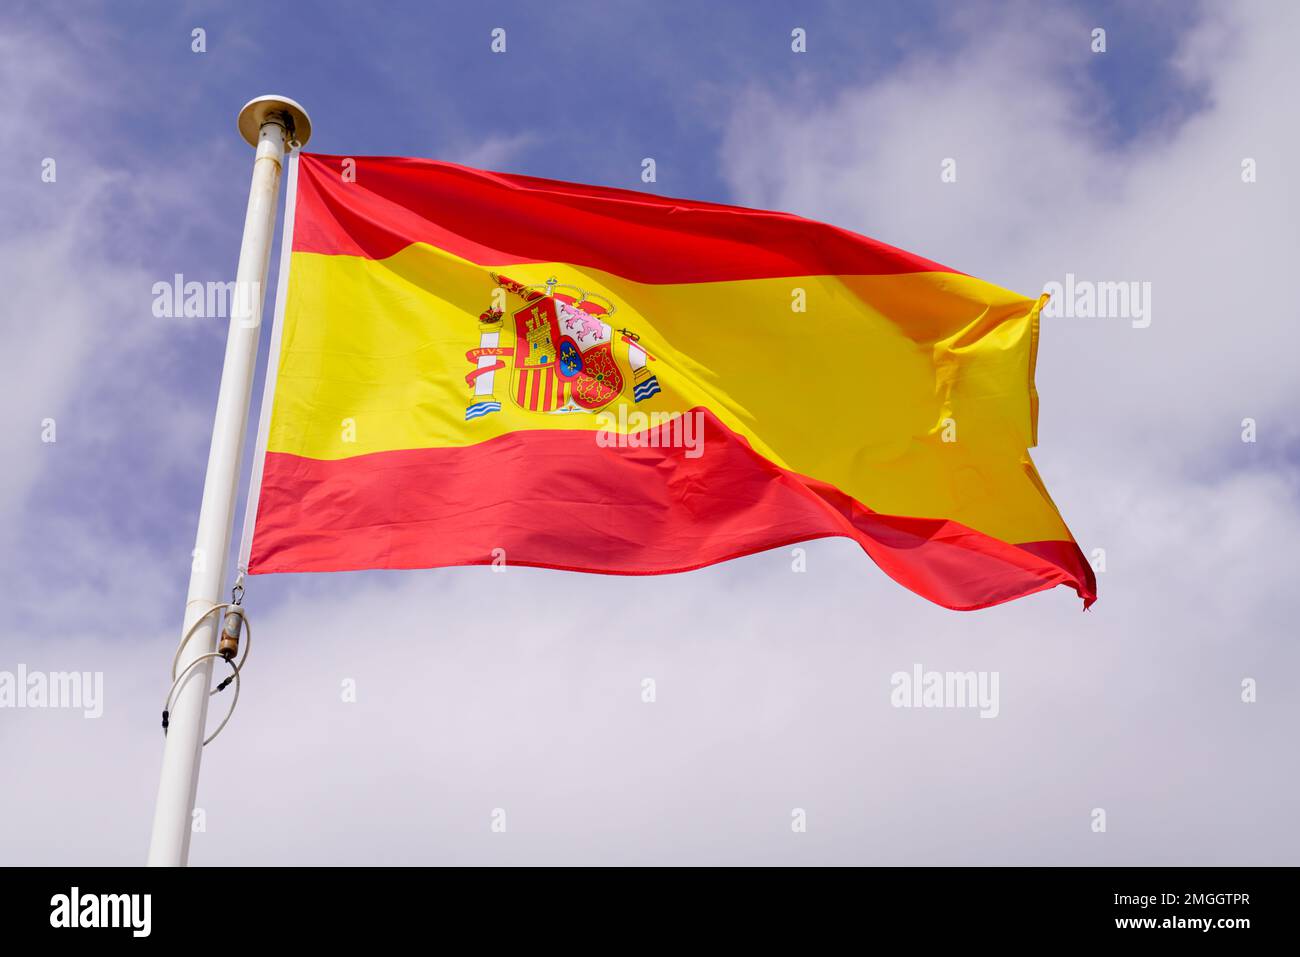 espagne drapeau espagnol flotte sur le ciel dans mat avec le vent Banque D'Images